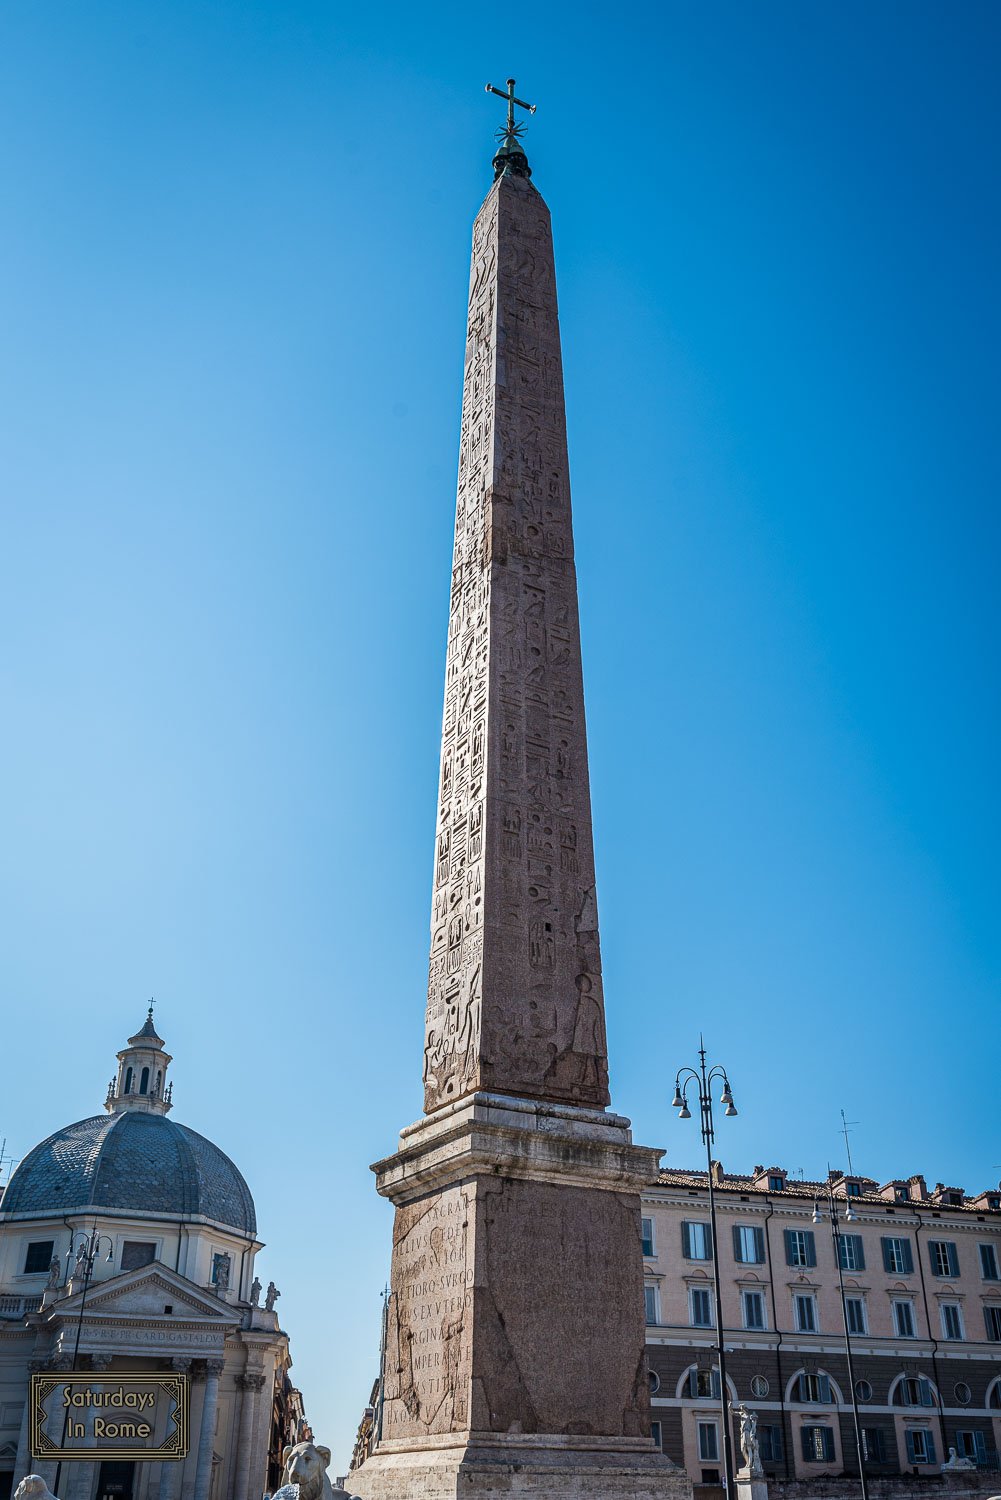 Obelisks In Rome - The Flaminio